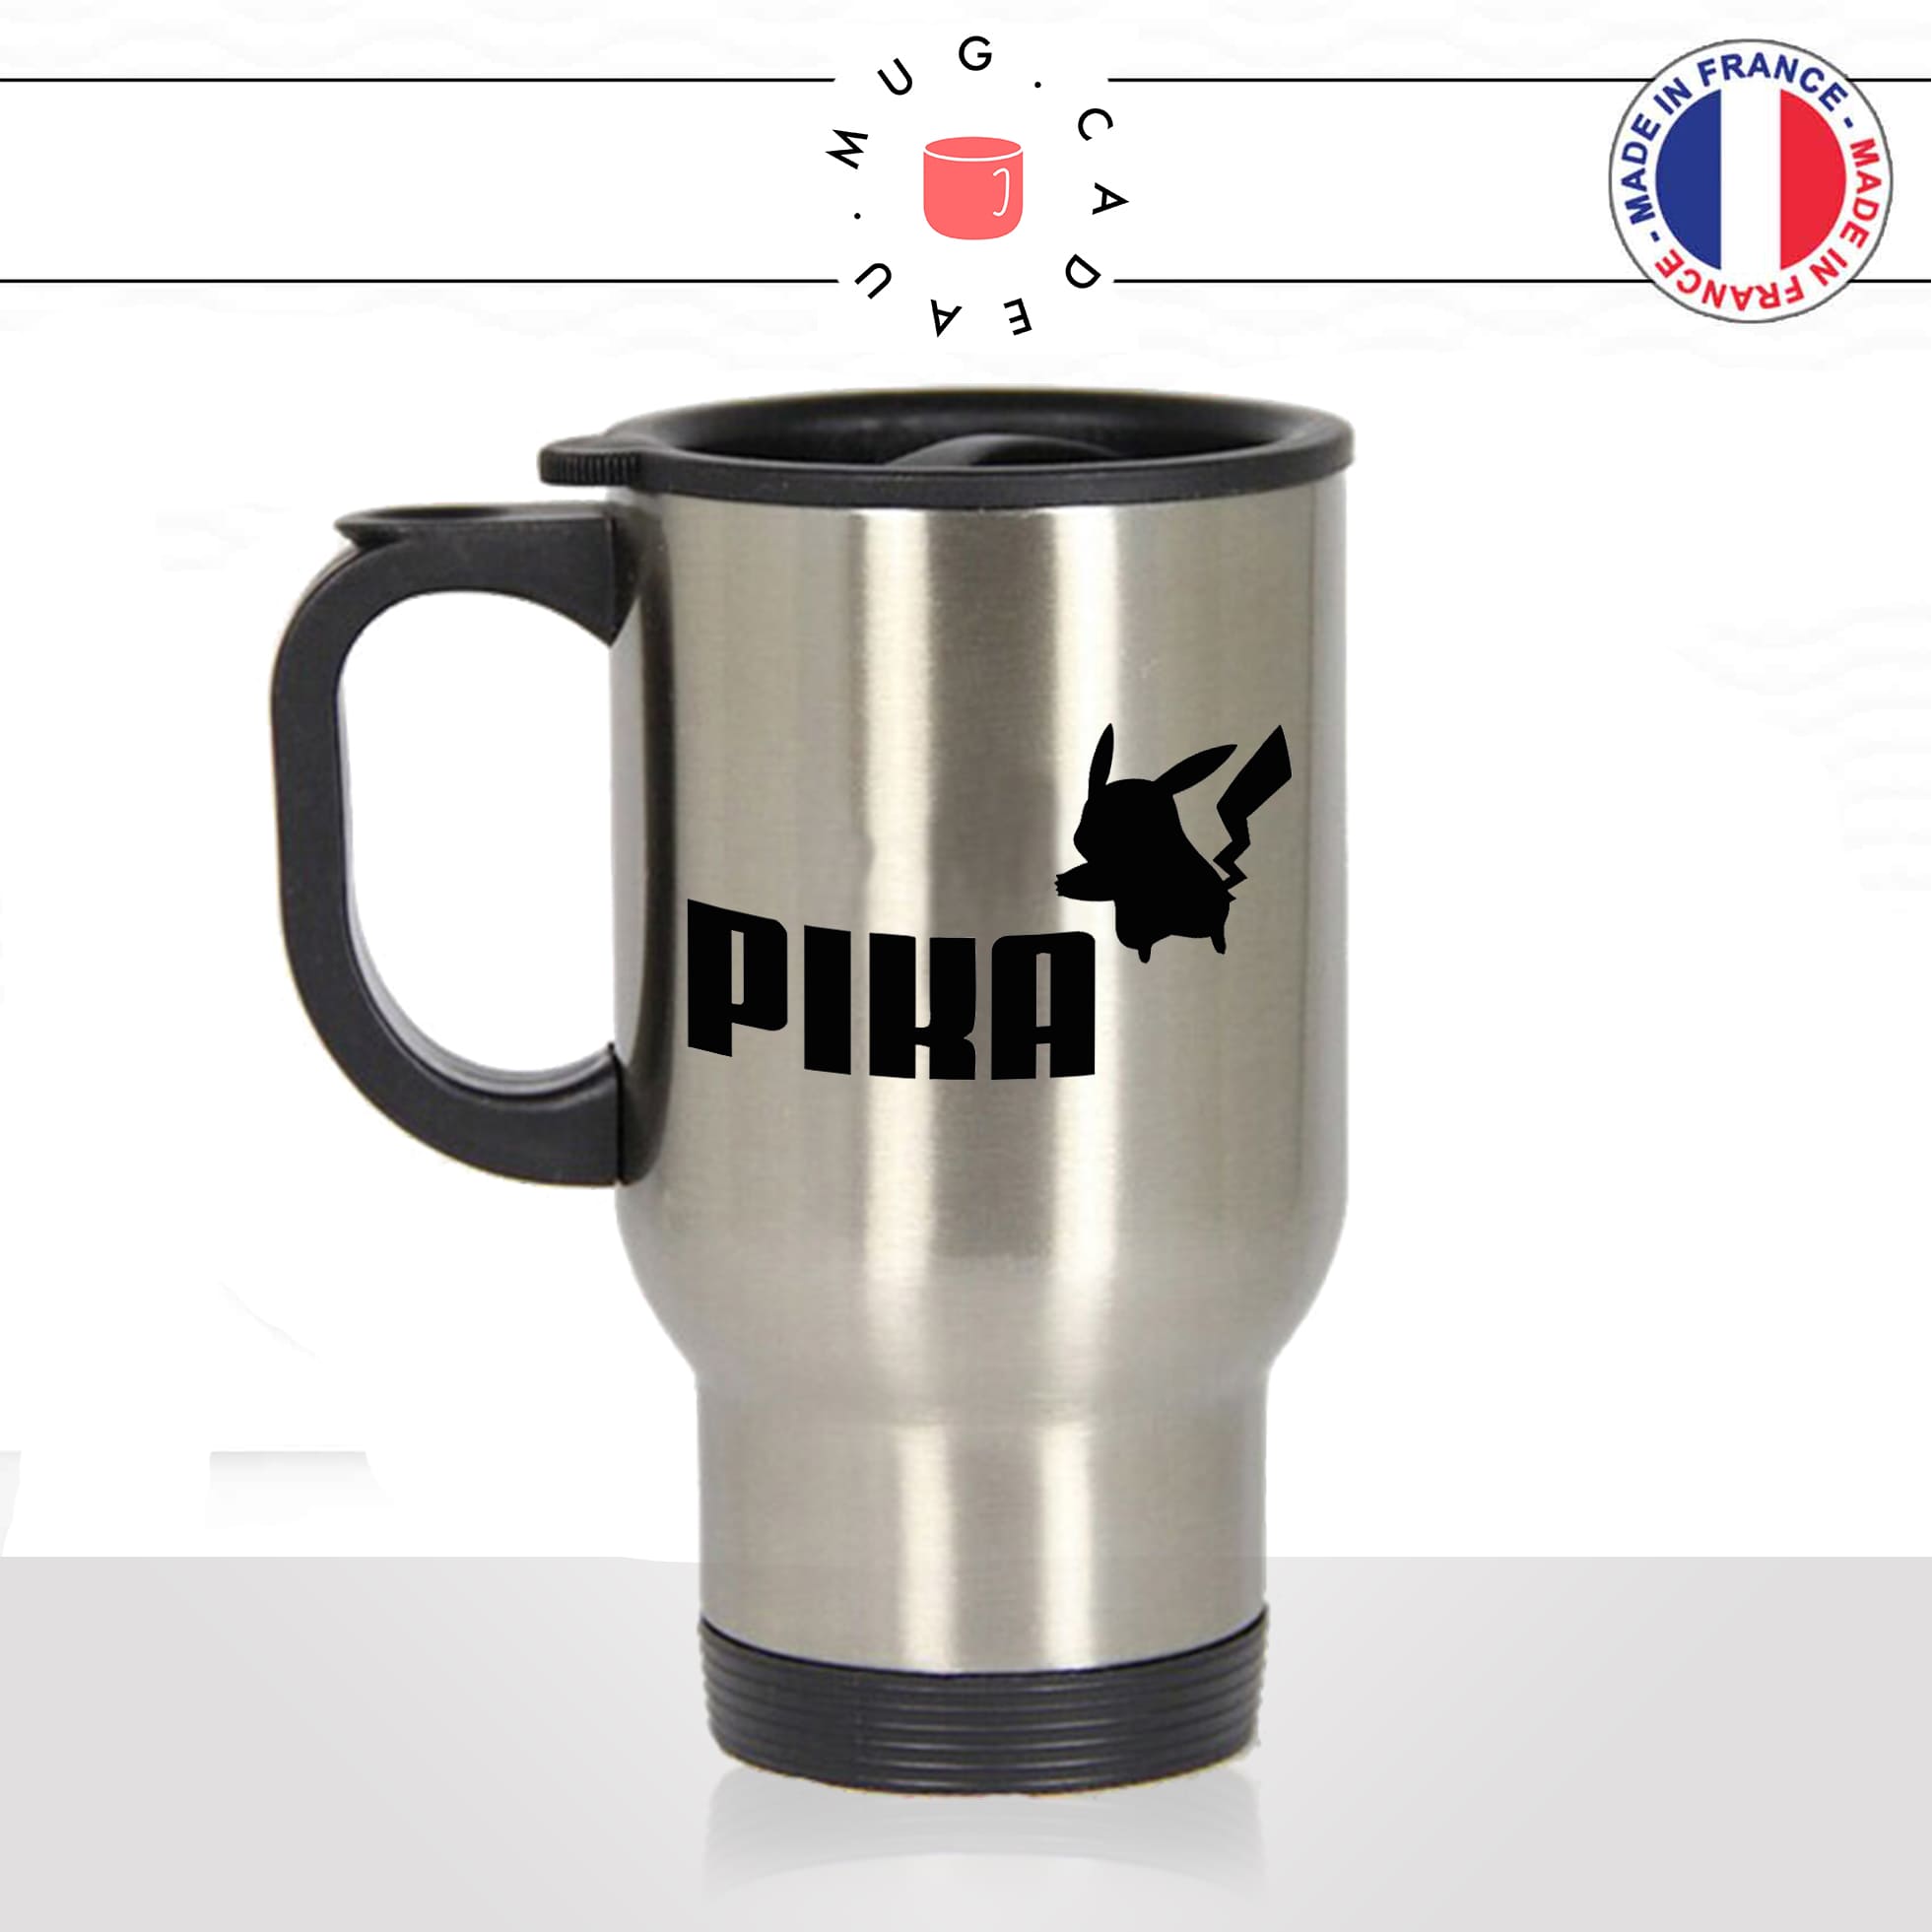 mug-tasse-thermos-isotherme-unique-pika-puma-marque-animal-homme-femme-parodie-humour-fun-cool-idée-cadeau-original-personnalisé